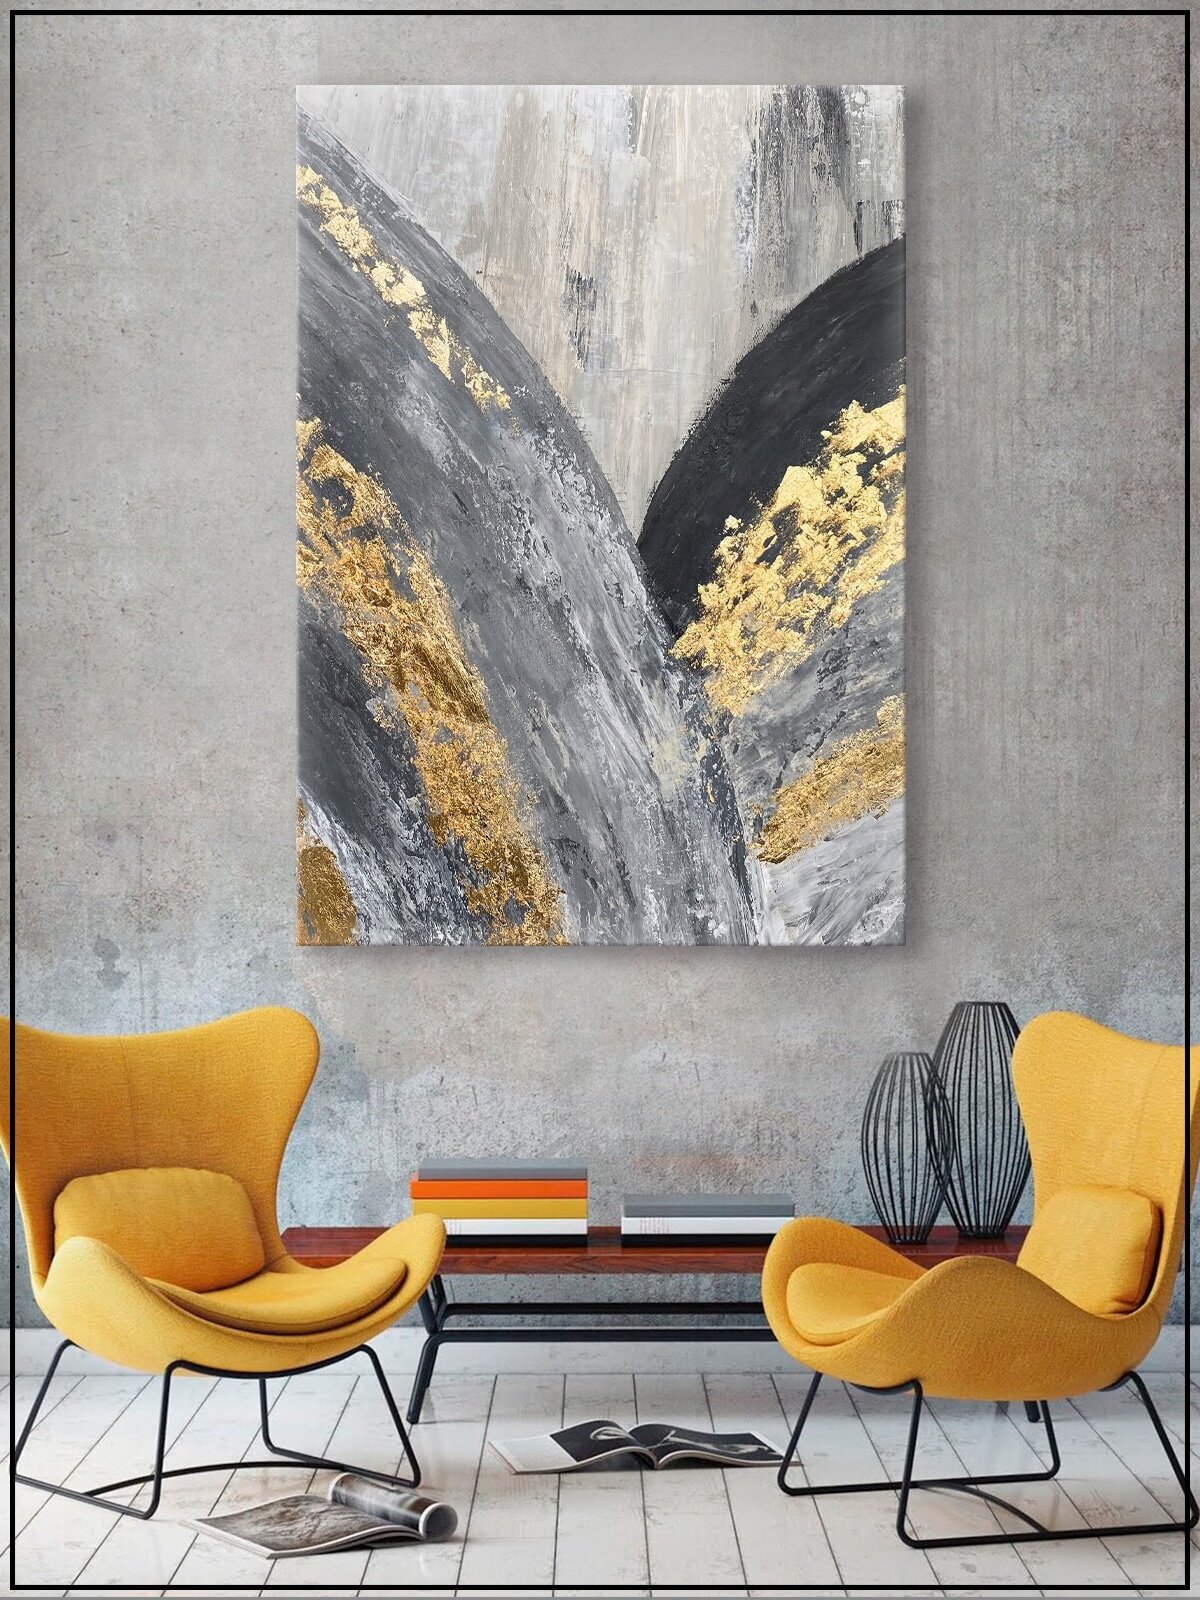 Картина для интерьера на натуральном хлопковом холсте "Абстрактная живопись золото", 30*40см, холст на подрамнике, картина в подарок